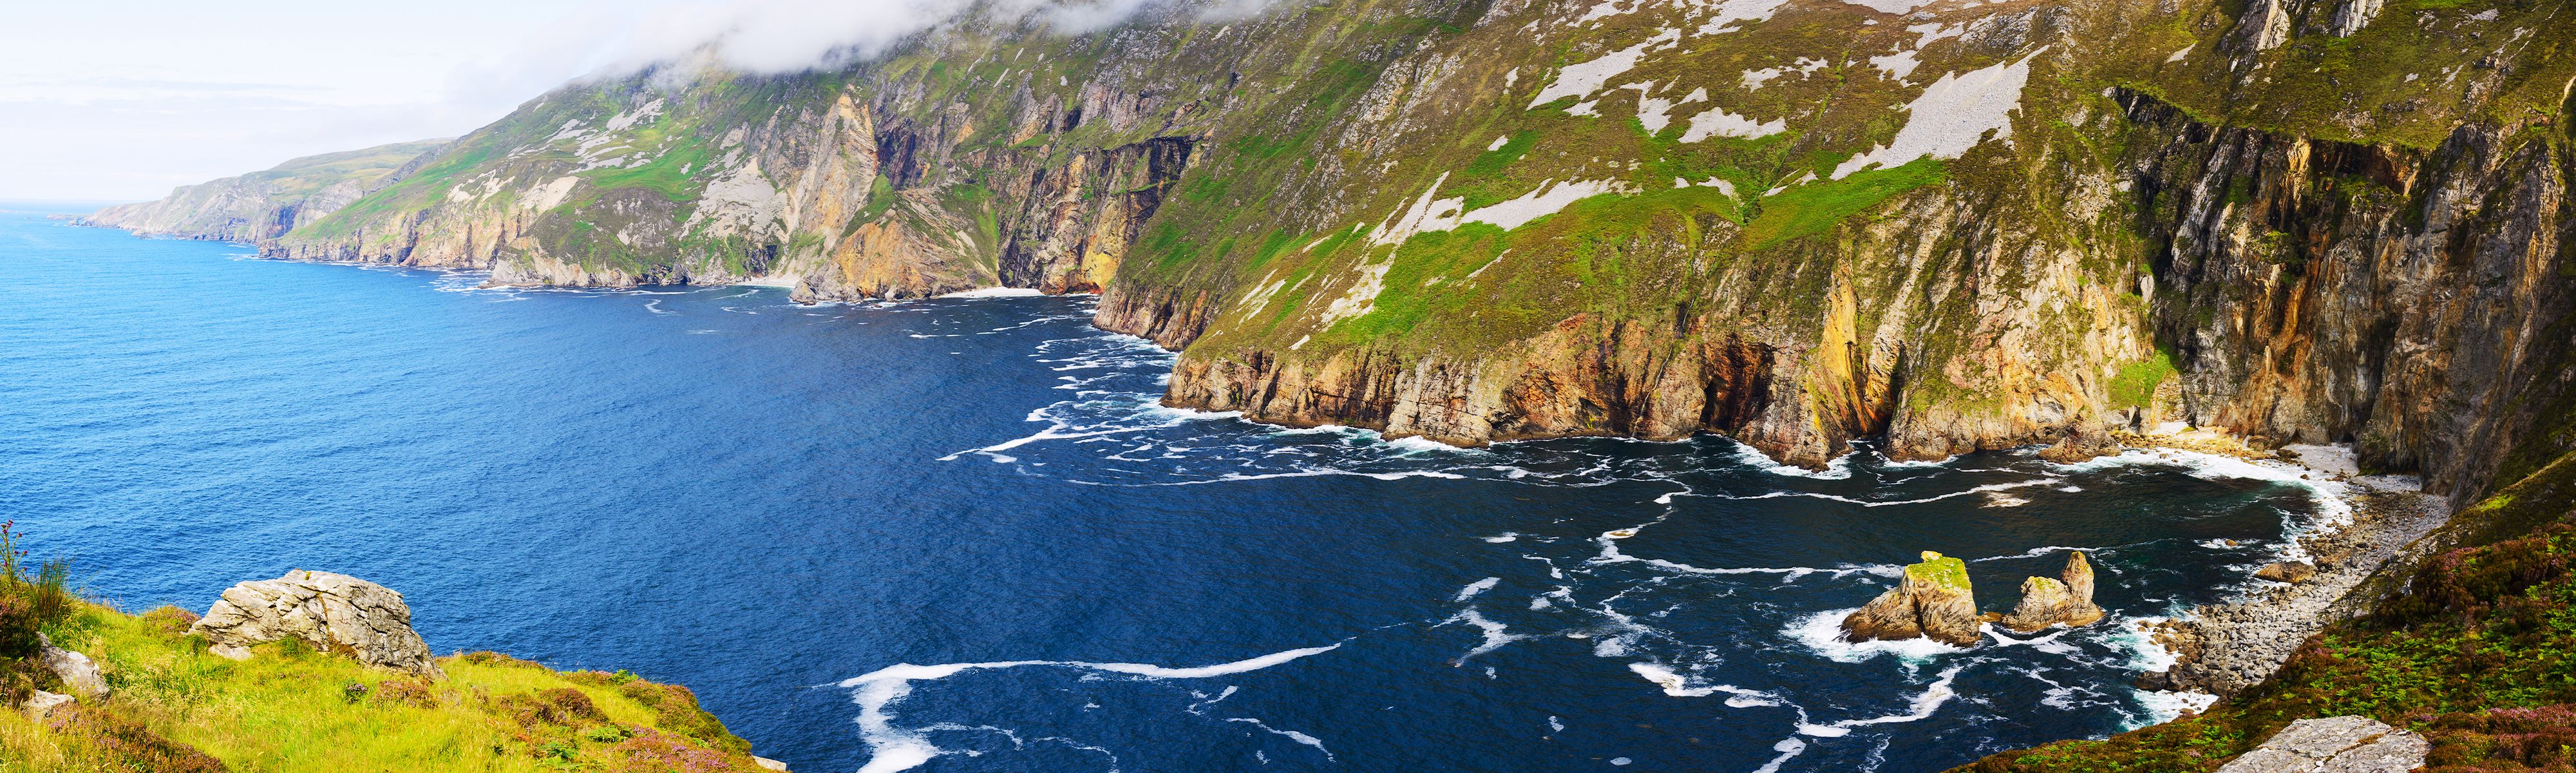 cie tours ireland's wild atlantic way